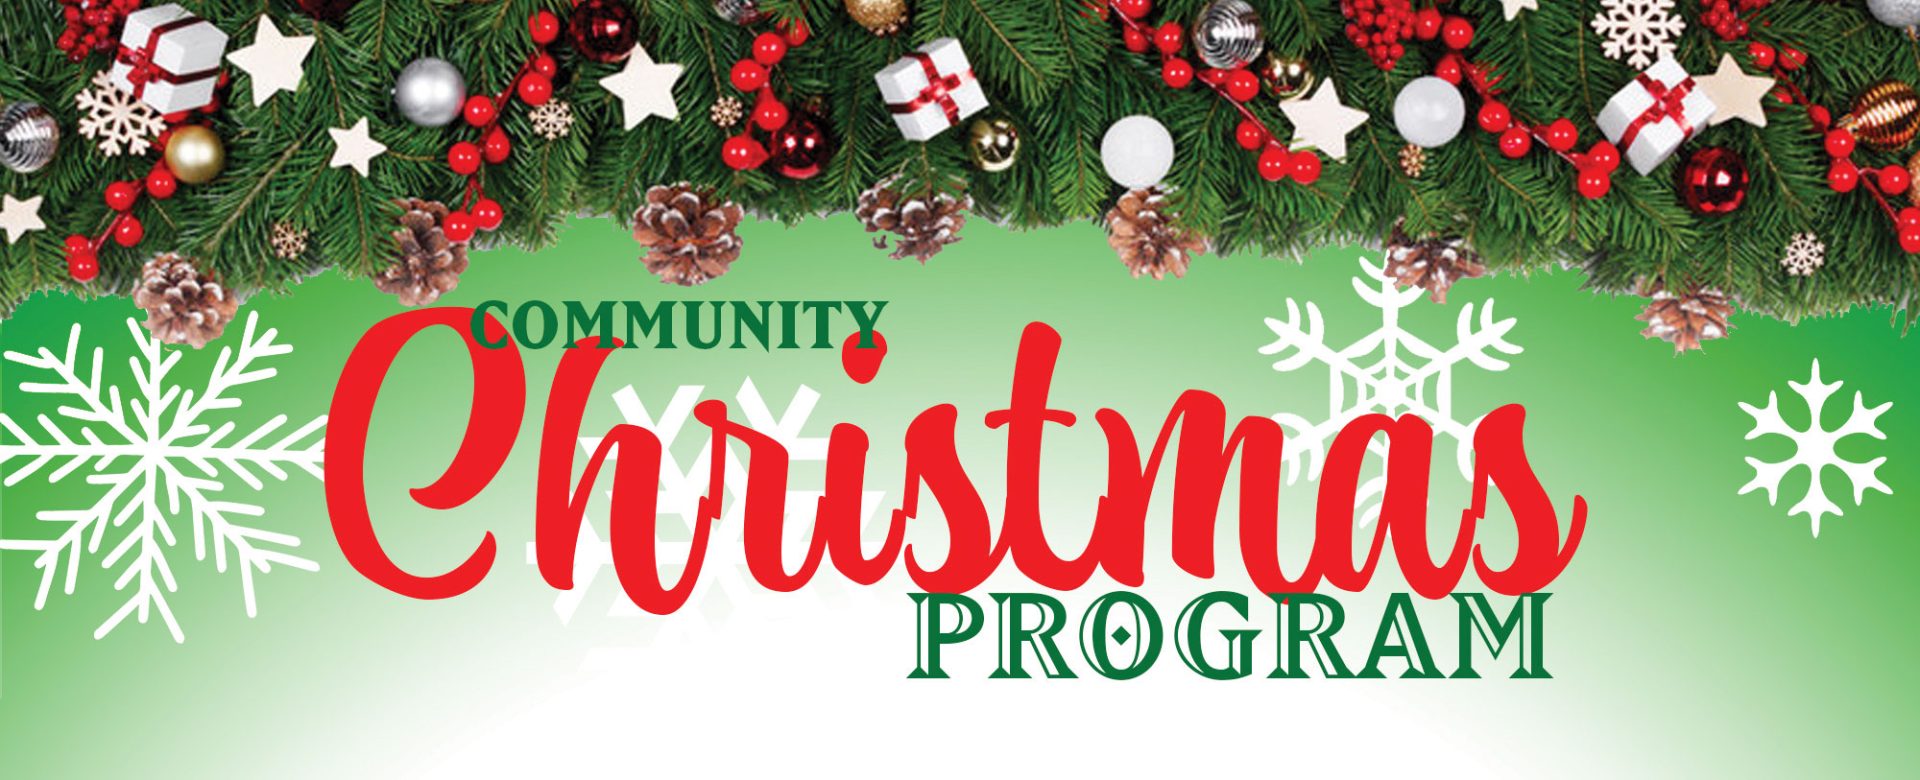 Community Christmas Program and Light Parade